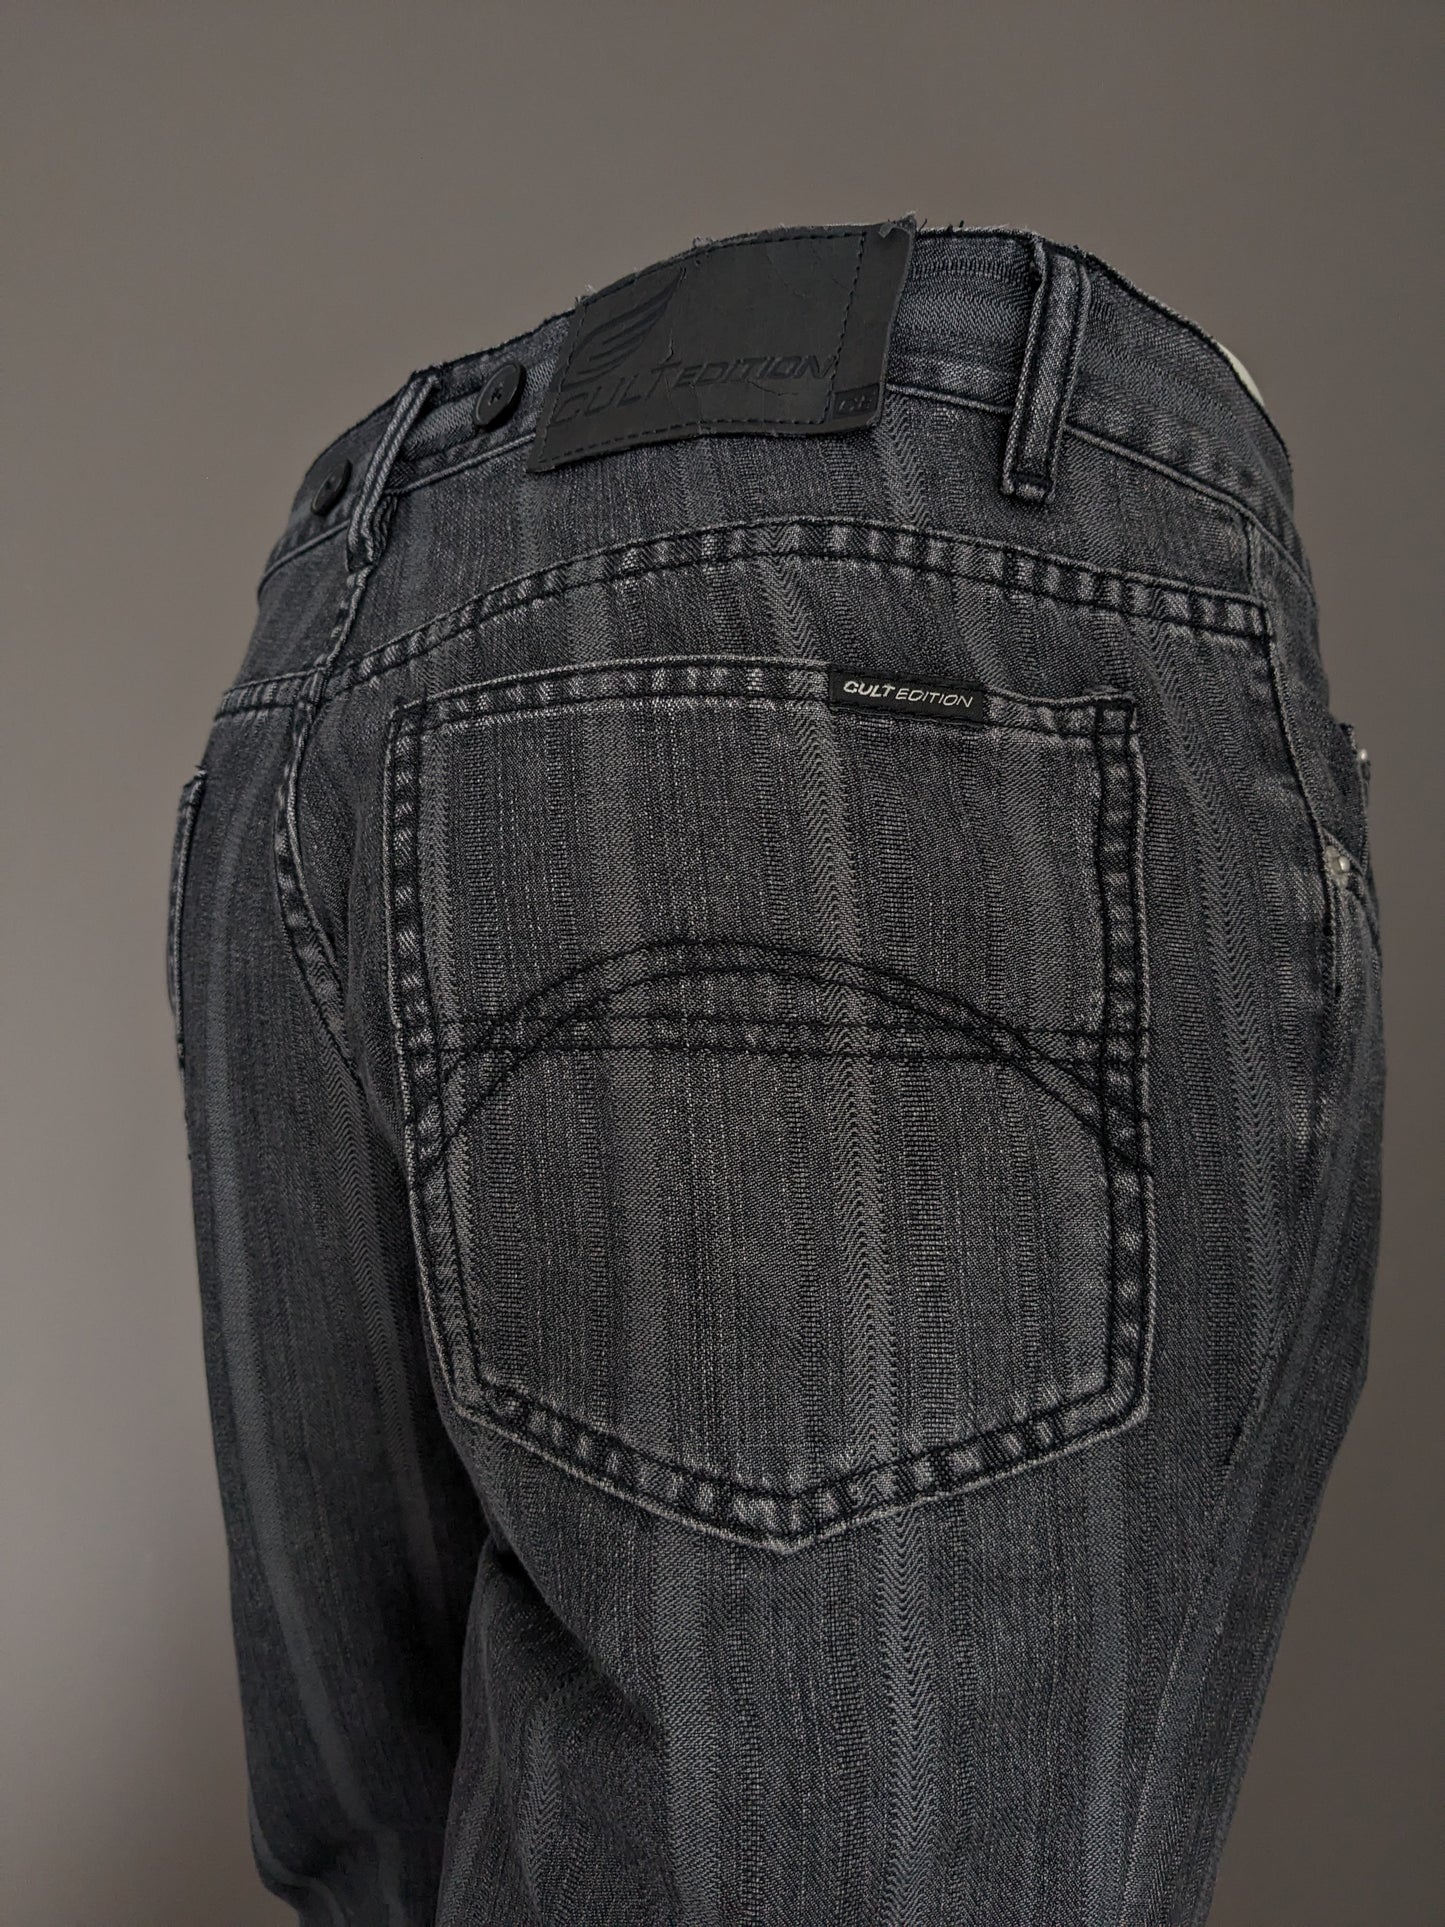 Jeans à édition culte avec applications de bretelles. Black gris rayé. Taille W32 - L28.